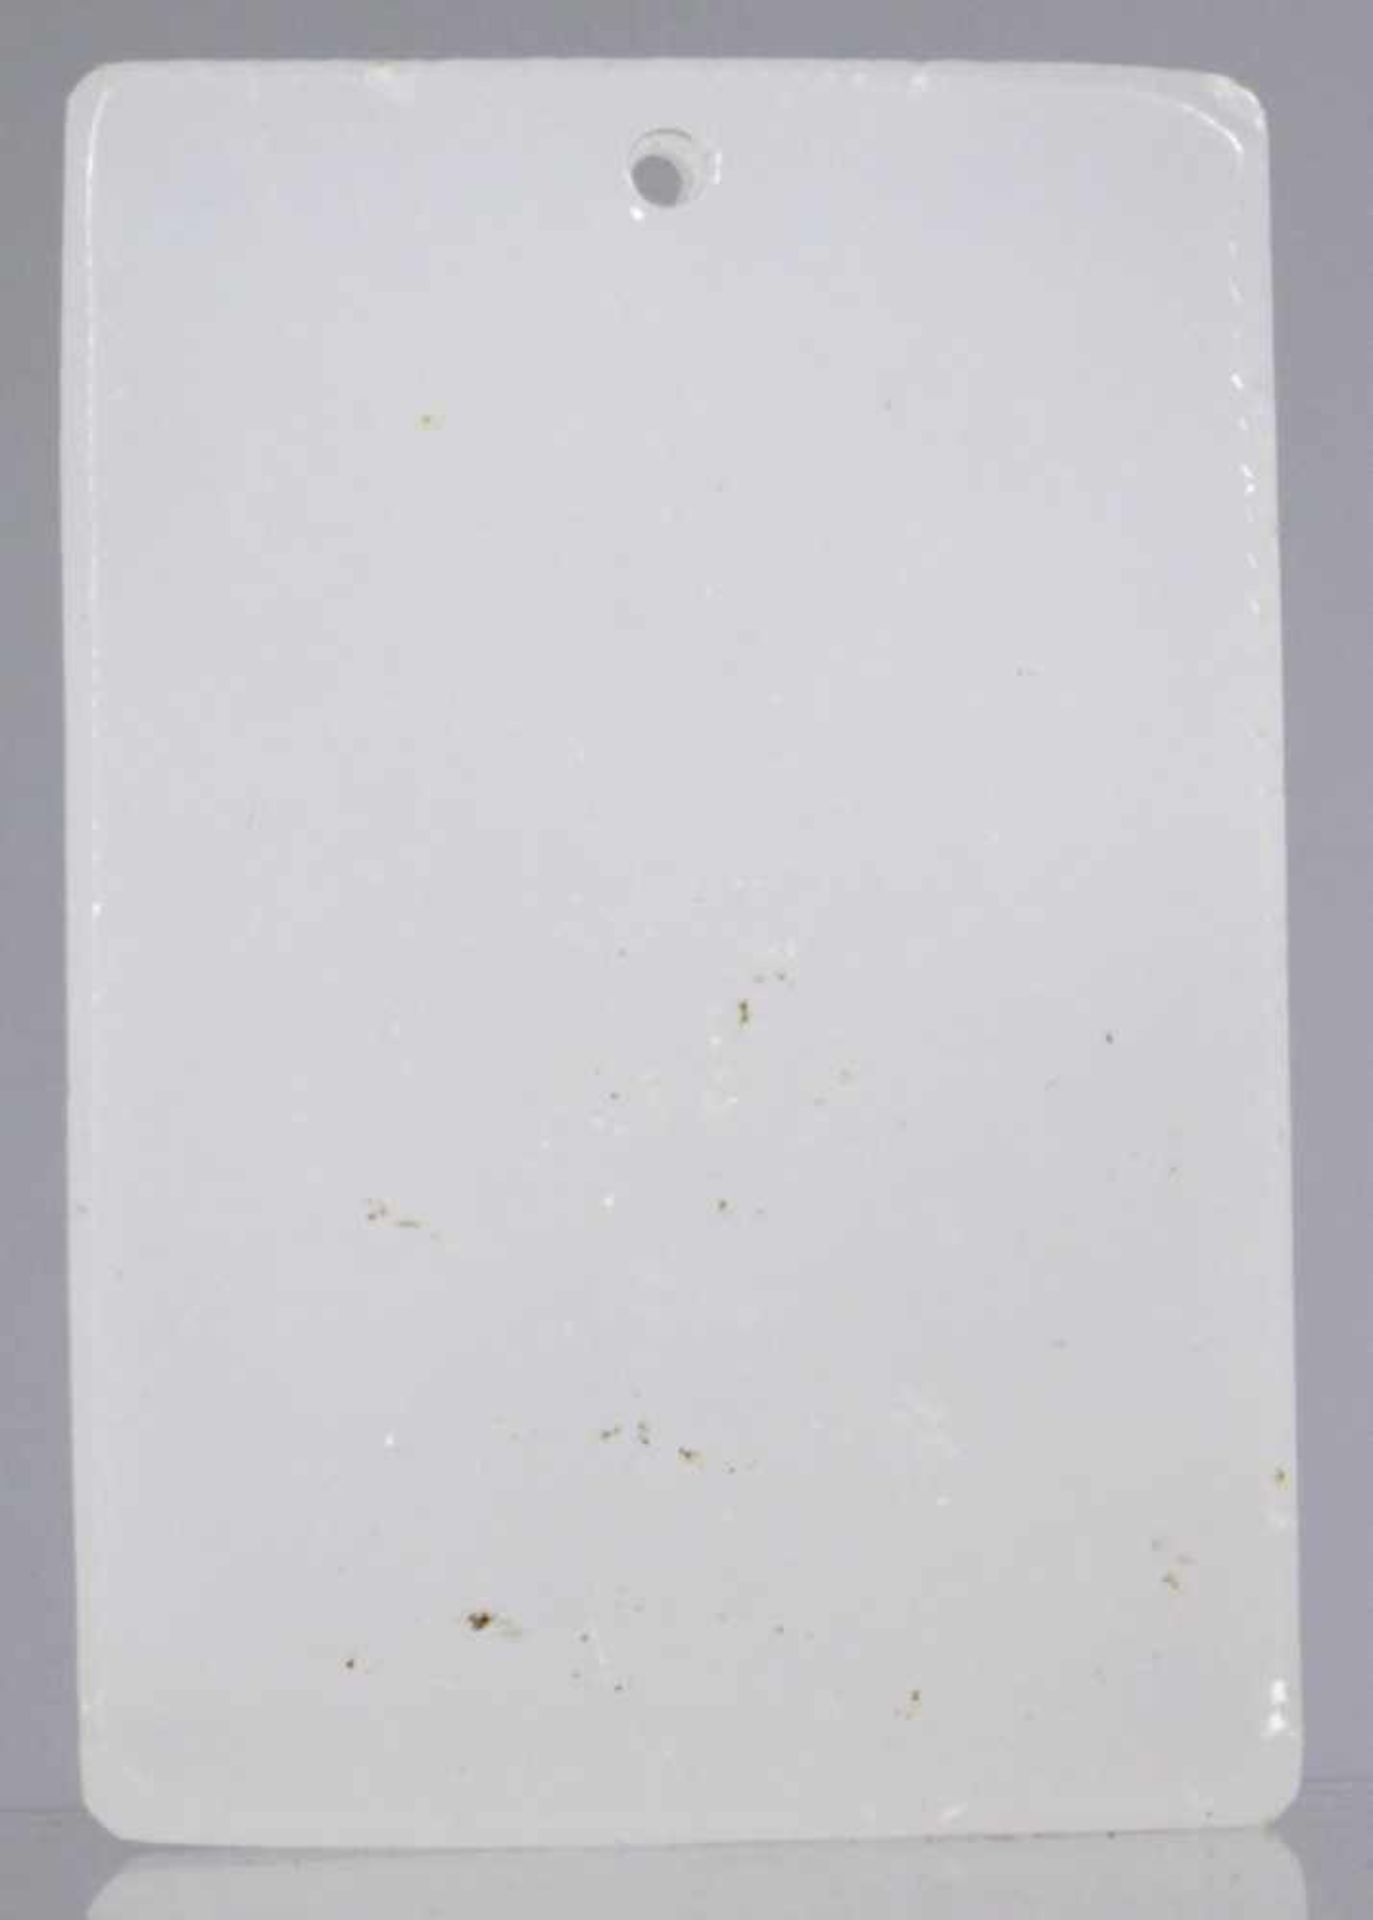 Anhänger, China, gefertigt aus Jade oder Glas, rechteckige Form mit kleiner Lochöse,Schauseite - Bild 2 aus 2